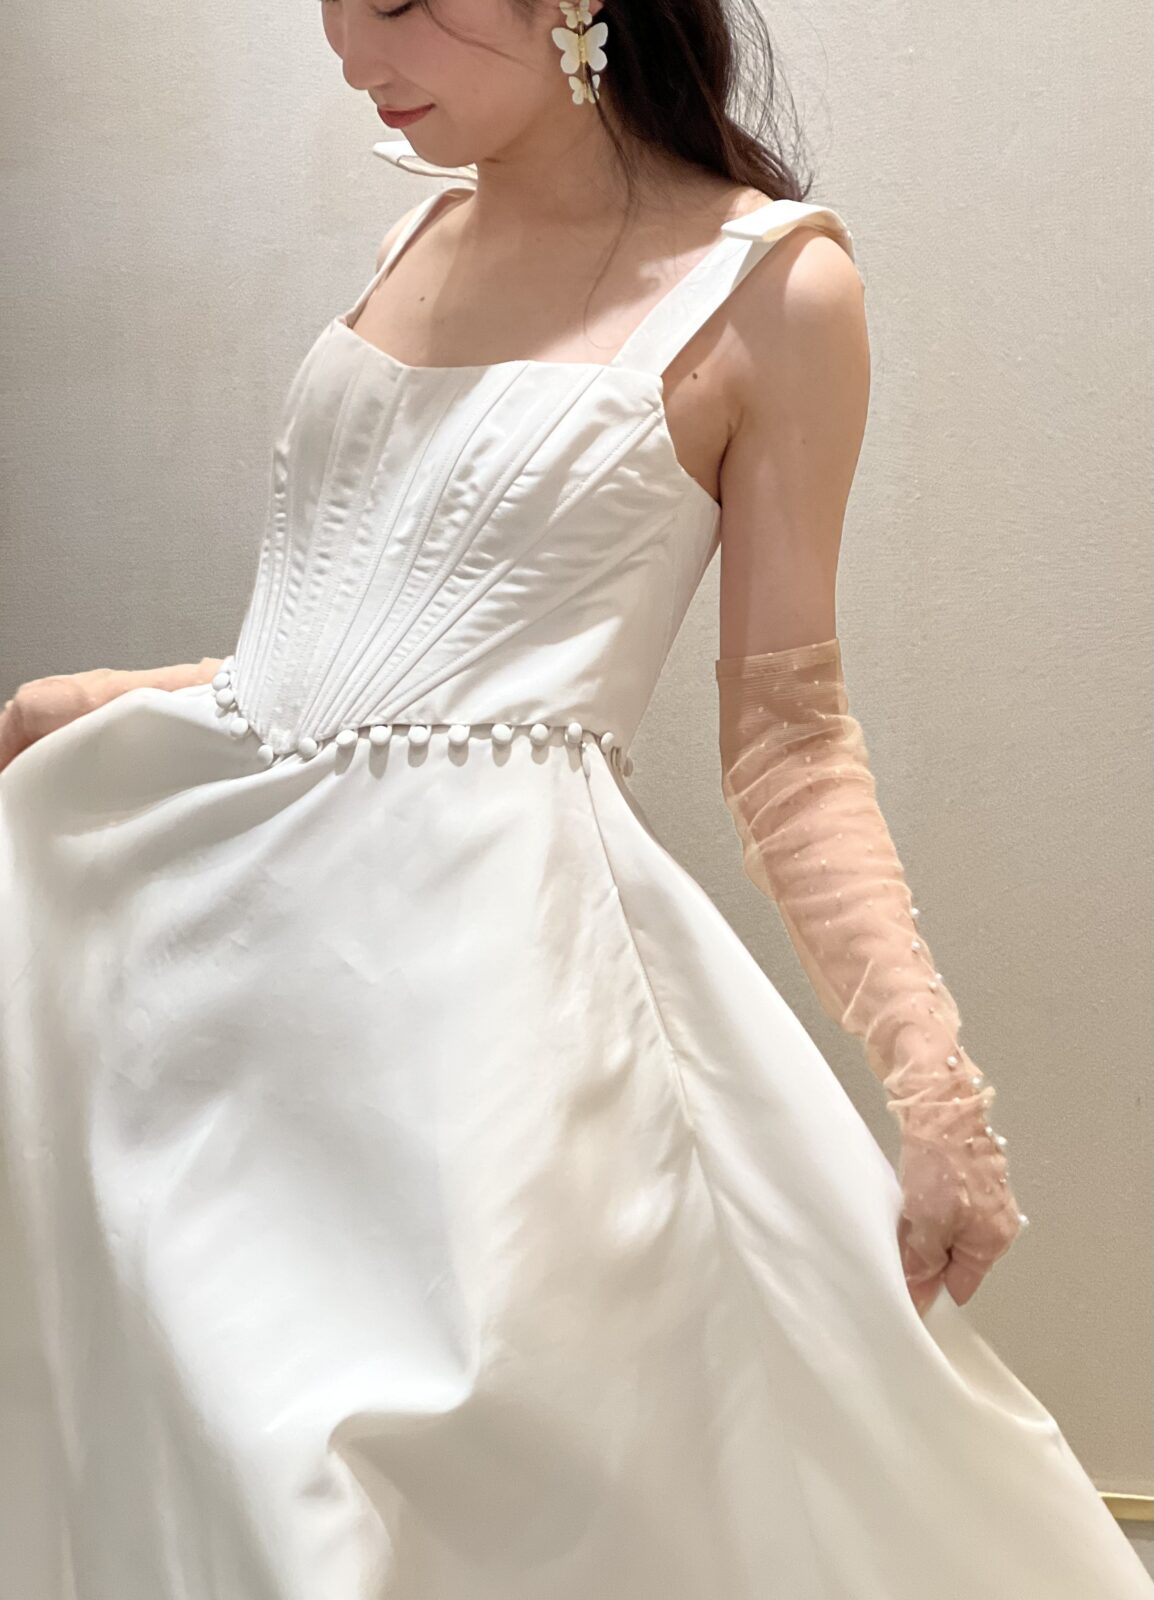 トリートドレッシング大阪の提携会場であるガーデンオリエンタル大阪におすすめのハリの素材が綺麗なAラインのウェディングドレス